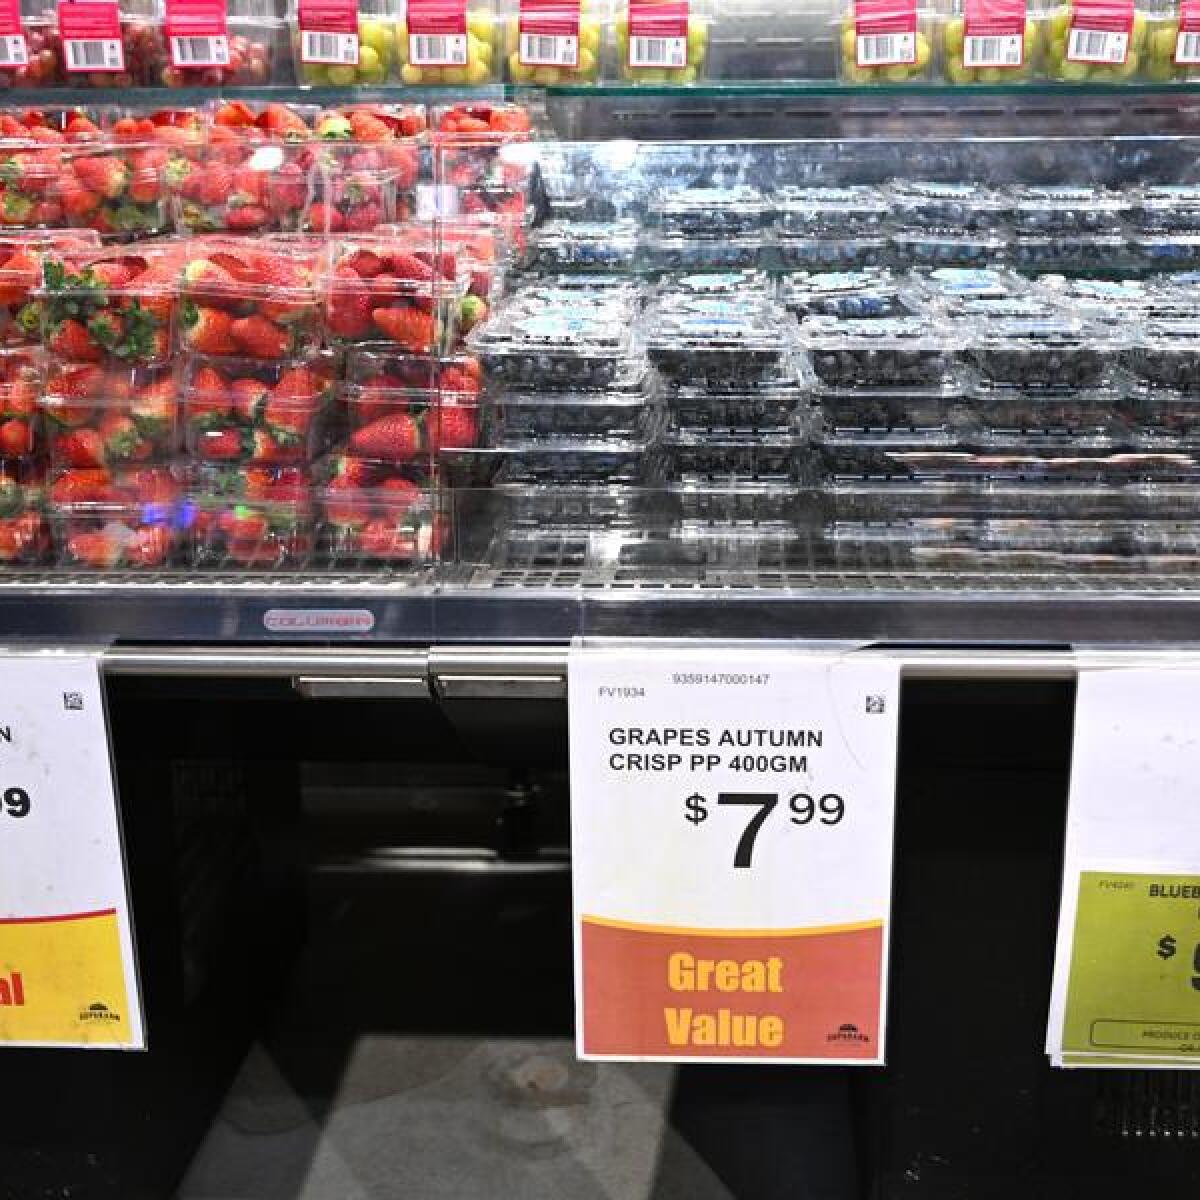 Rising supermarket prices